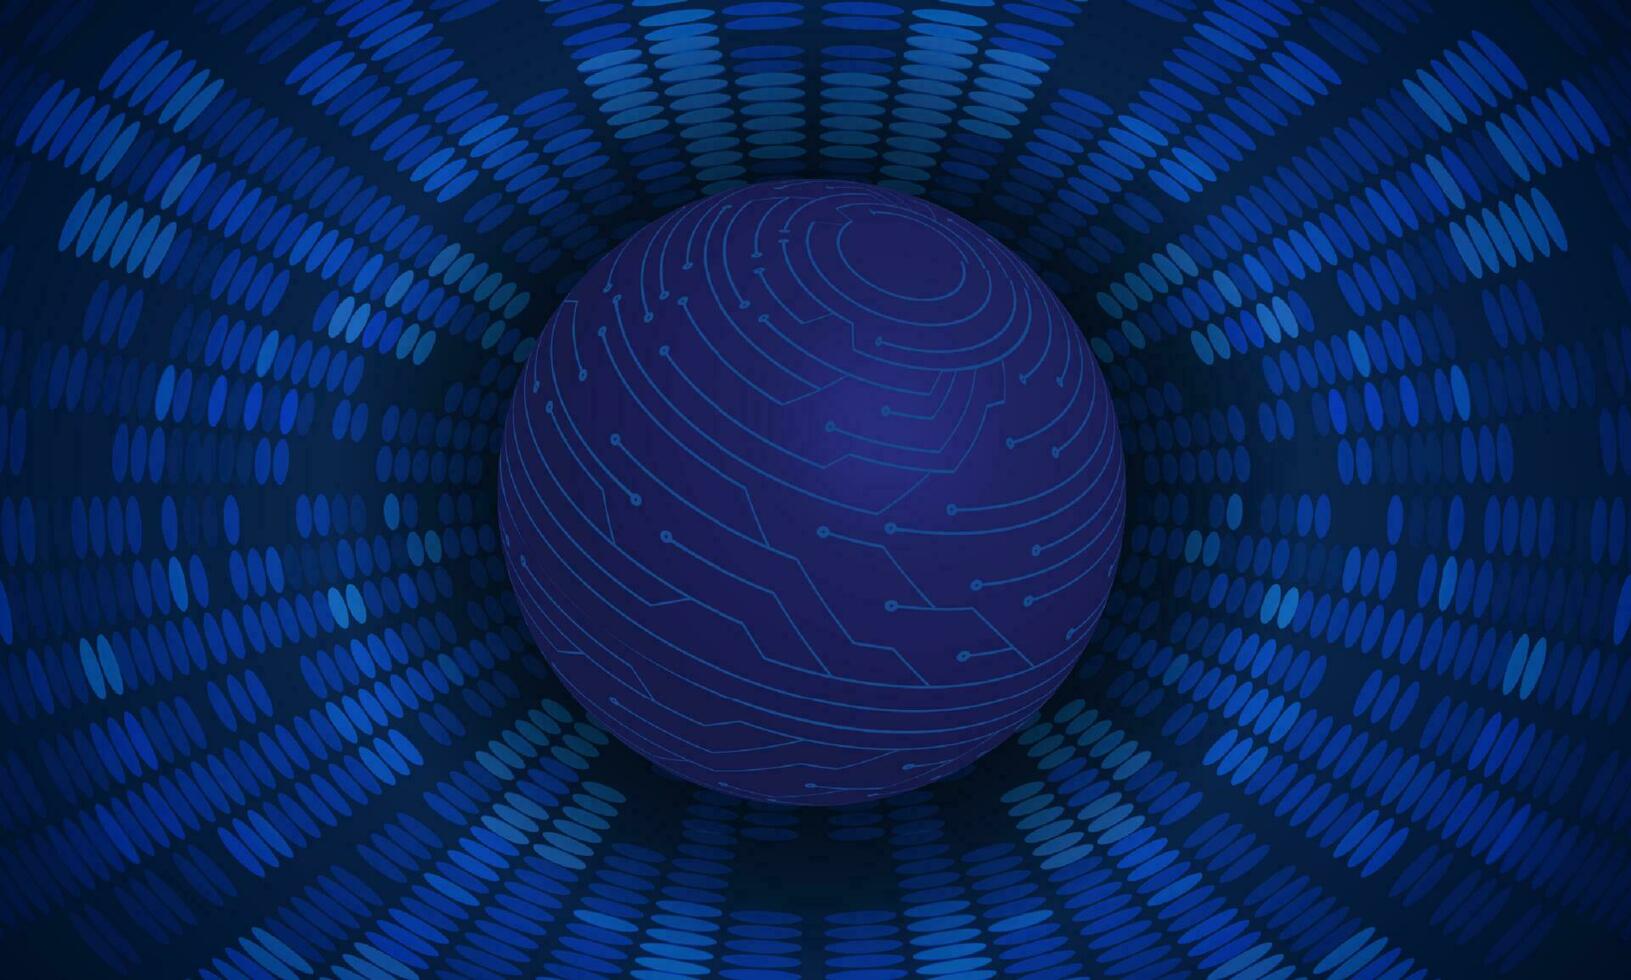 fond de technologie de cybersécurité moderne avec globe bleu vecteur